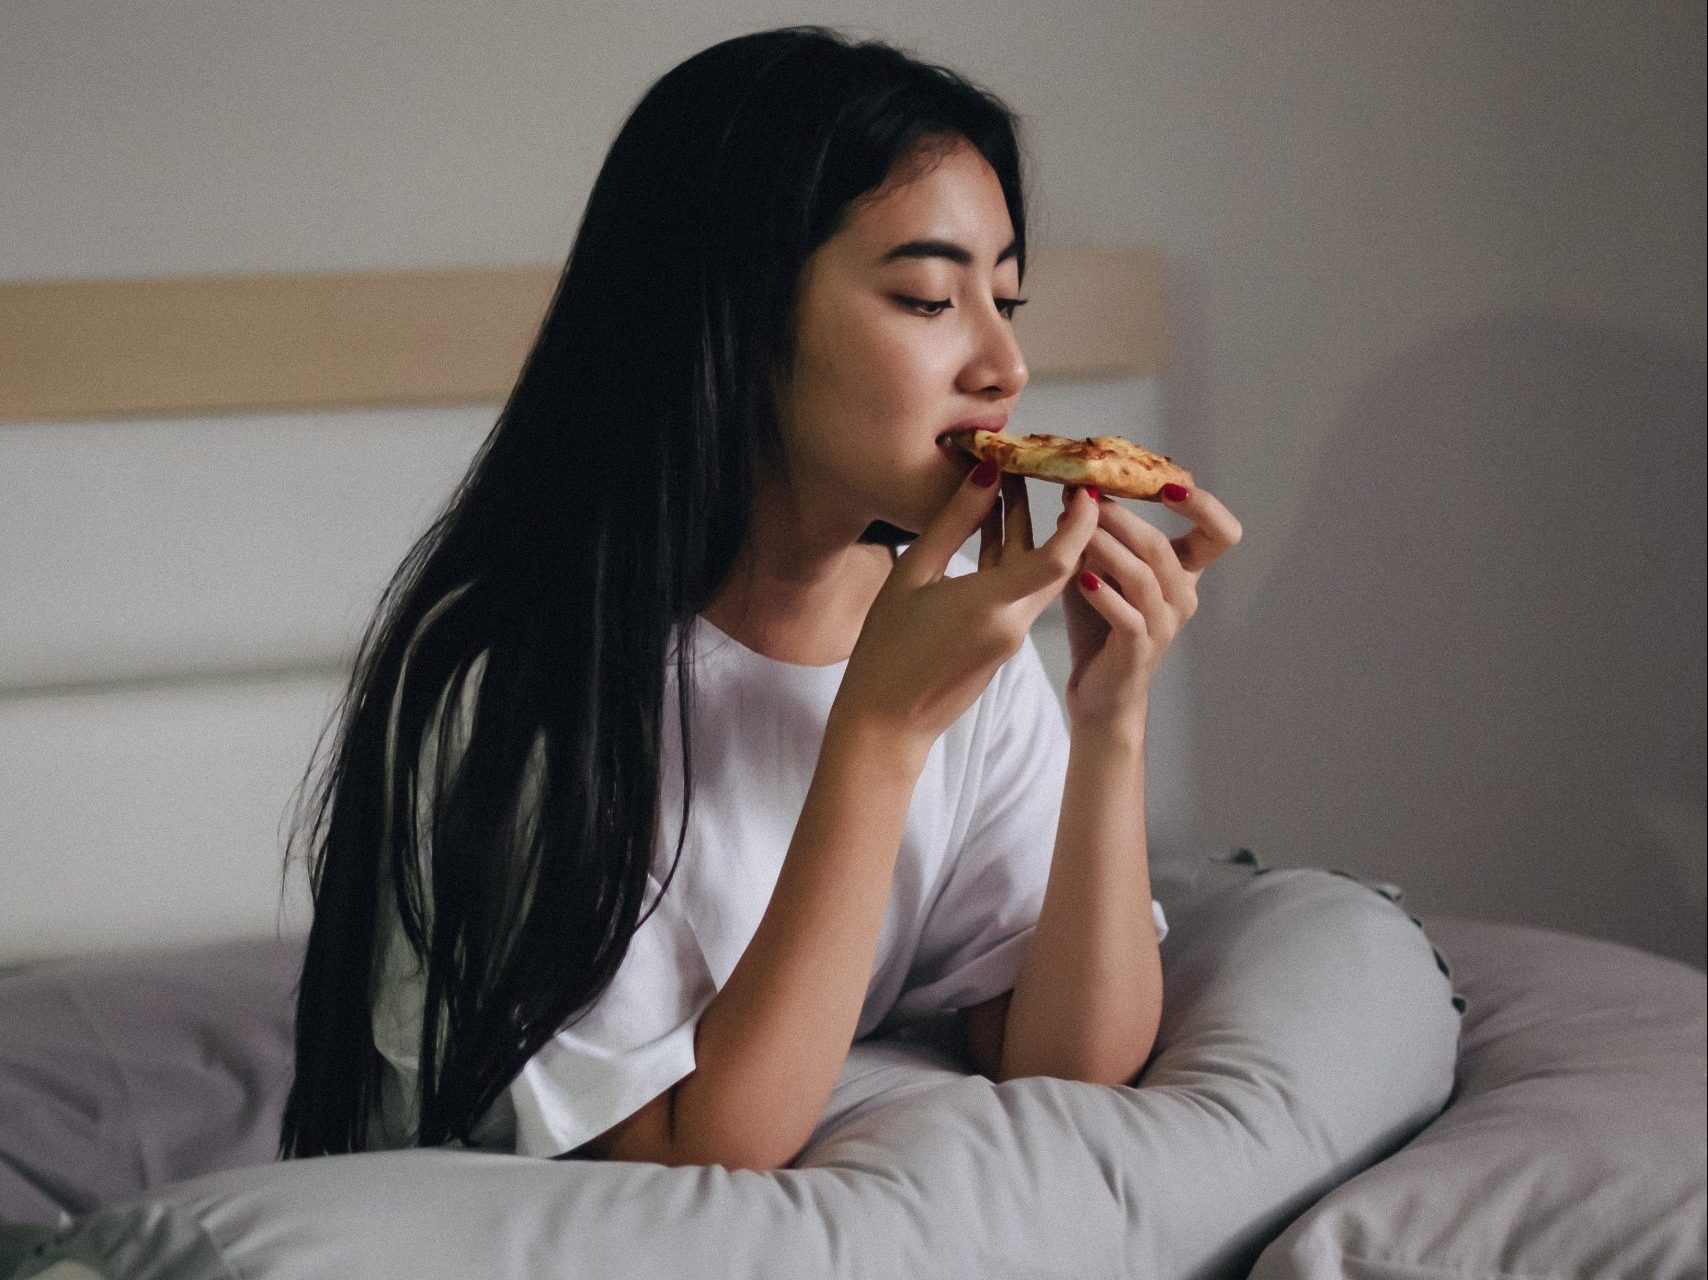 Το να τρως αυτή την ώρα της ημέρας μπορεί να σε γεράσει πιο γρήγορα, σύμφωνα με μια νέα μελέτη